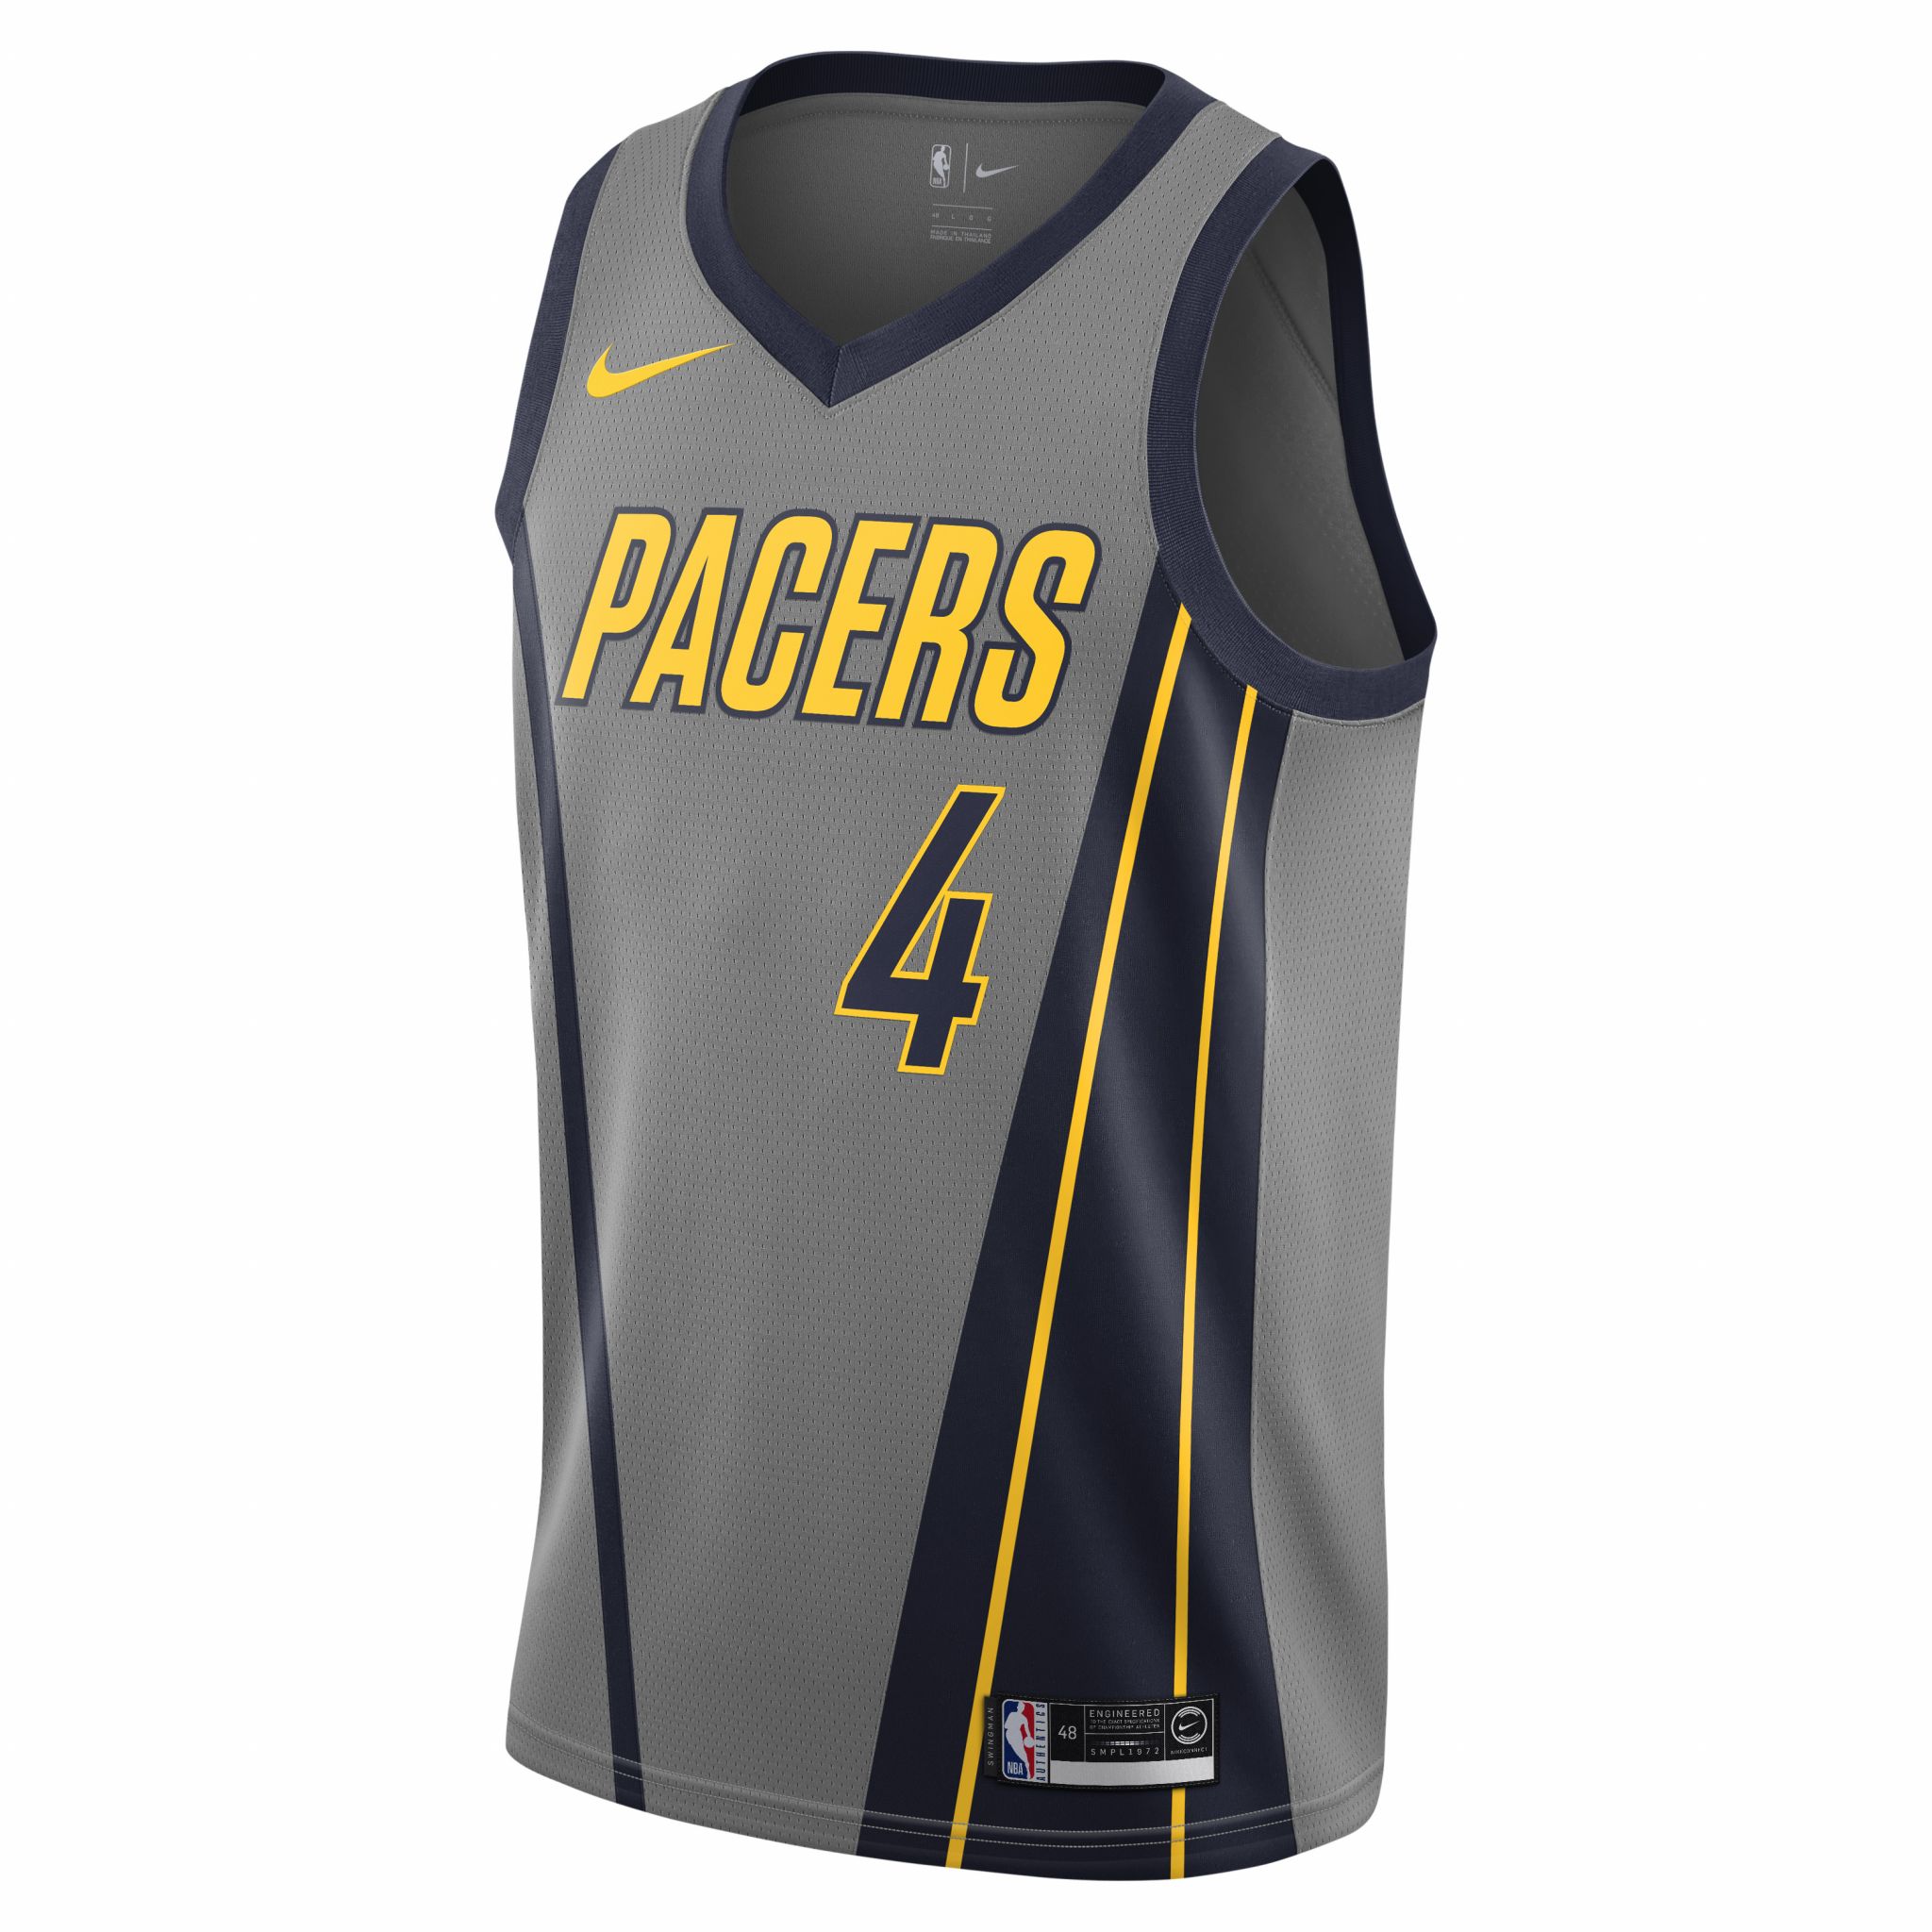 San Antonio Spurs announce 2018-19 Nike City Edition uniform design